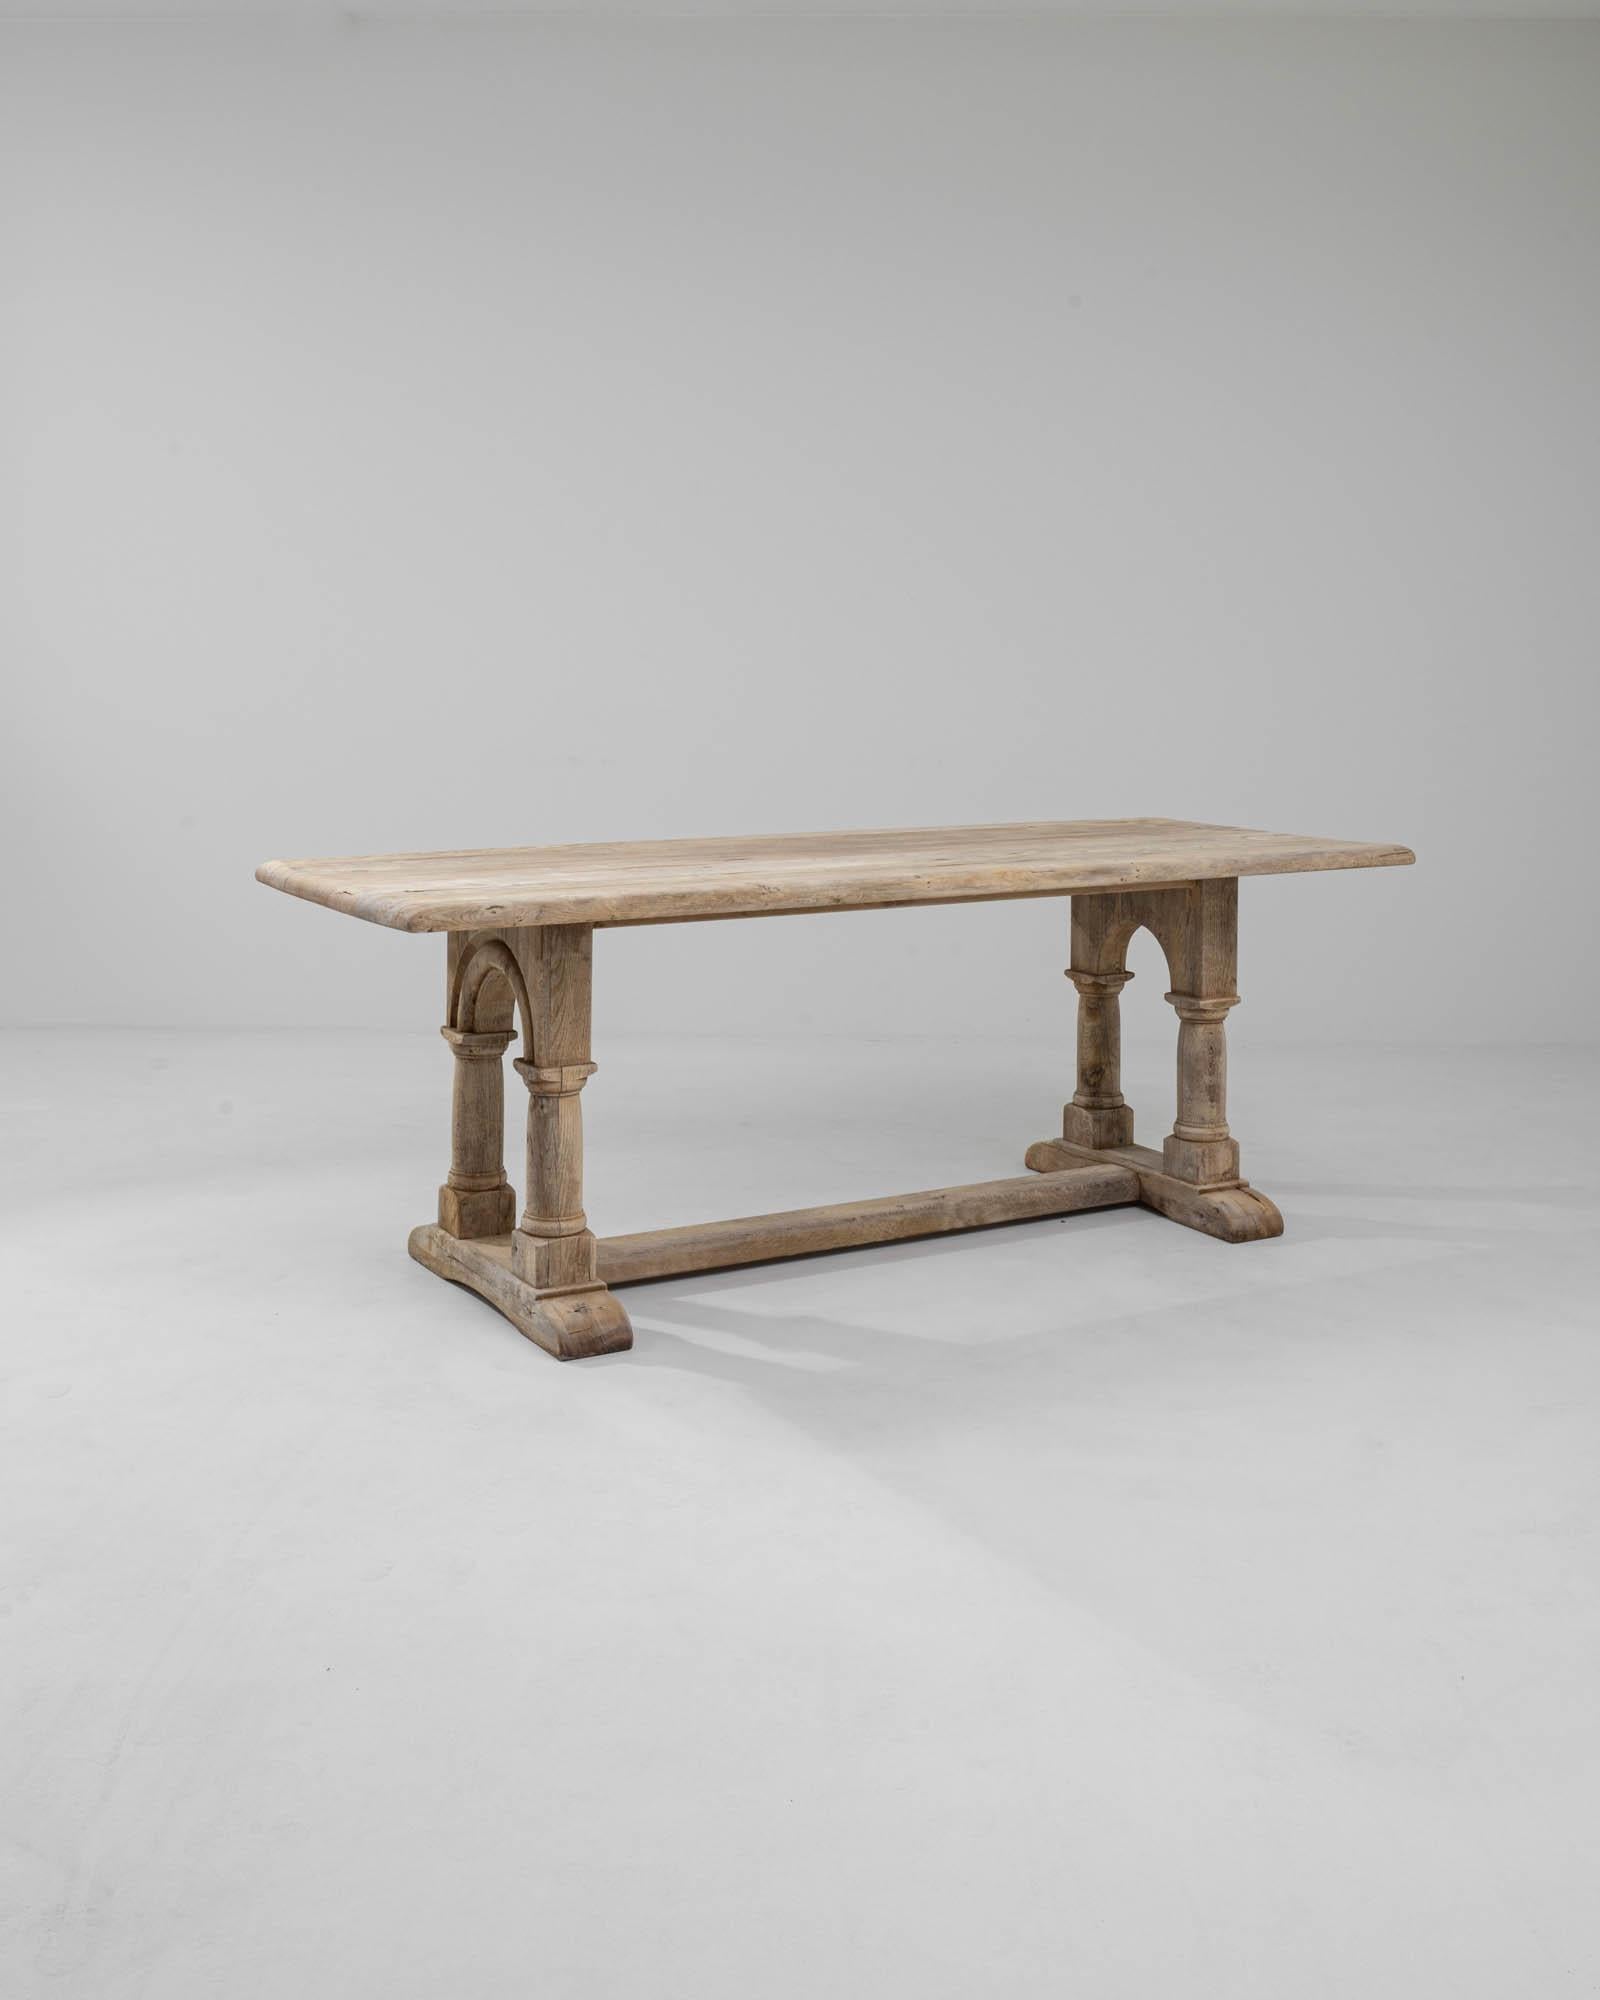 Ein Esstisch aus Holz aus dem Belgien des 20. Jahrhunderts. Dieser robuste und stabile Tisch besteht aus zwei Beinpaaren, die wie Säulen stehen und durch hoch aufragende Bögen verbunden sind. Ein behutsames Bleichverfahren hat sich über die